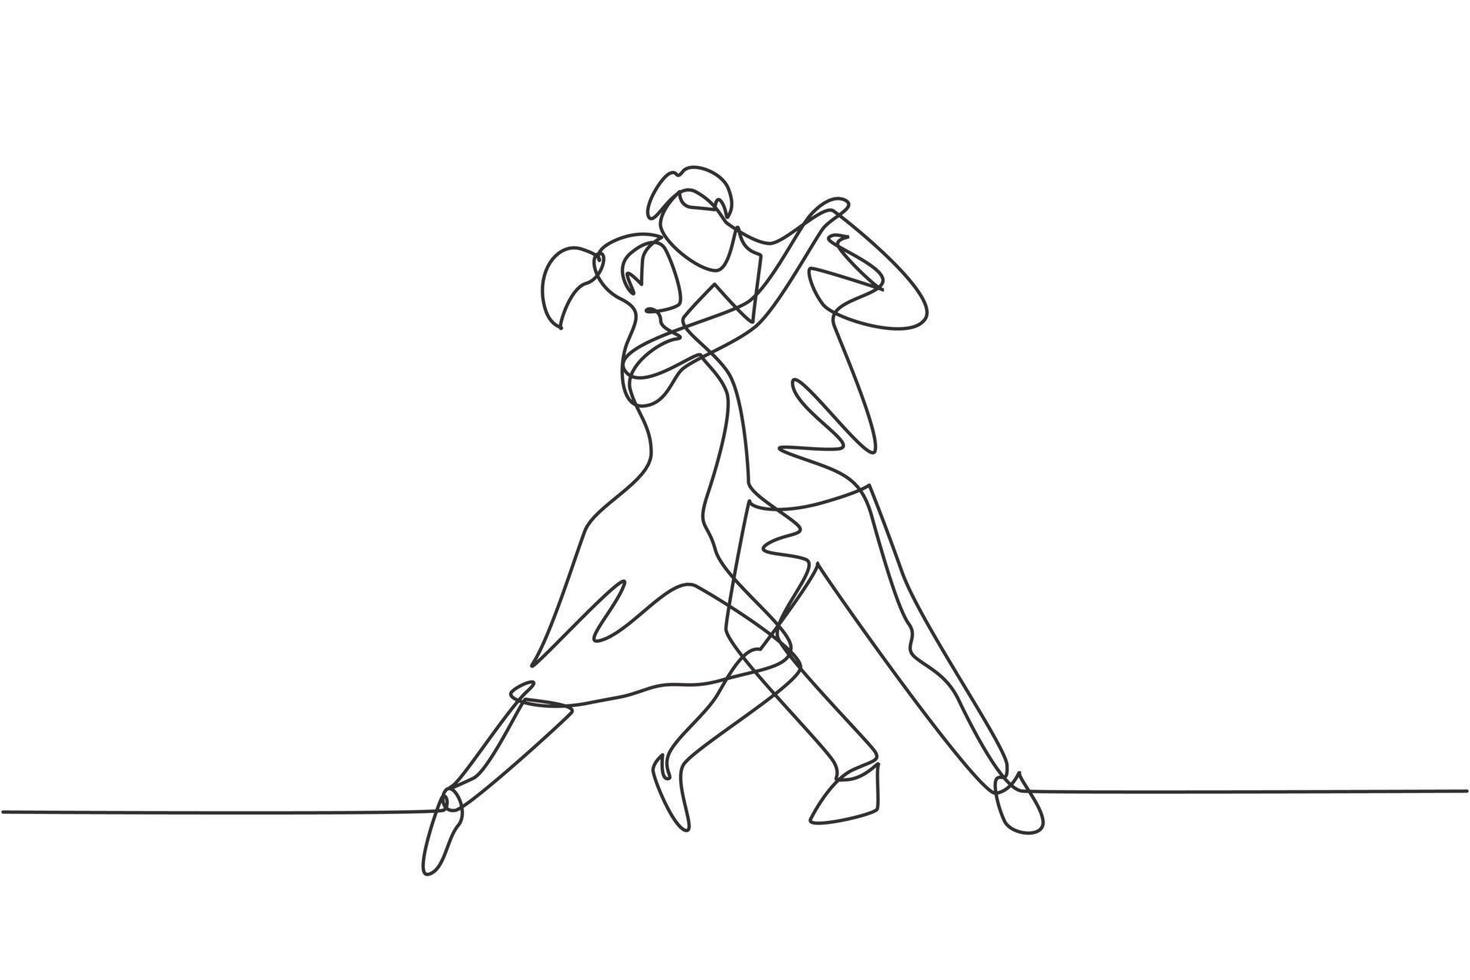 continua una linea che disegna persone che ballano salsa. coppie, uomo e donna che ballano insieme. coppie di ballerini con stili di valzer tango e salsa si muovono. illustrazione grafica vettoriale di disegno di disegno a linea singola